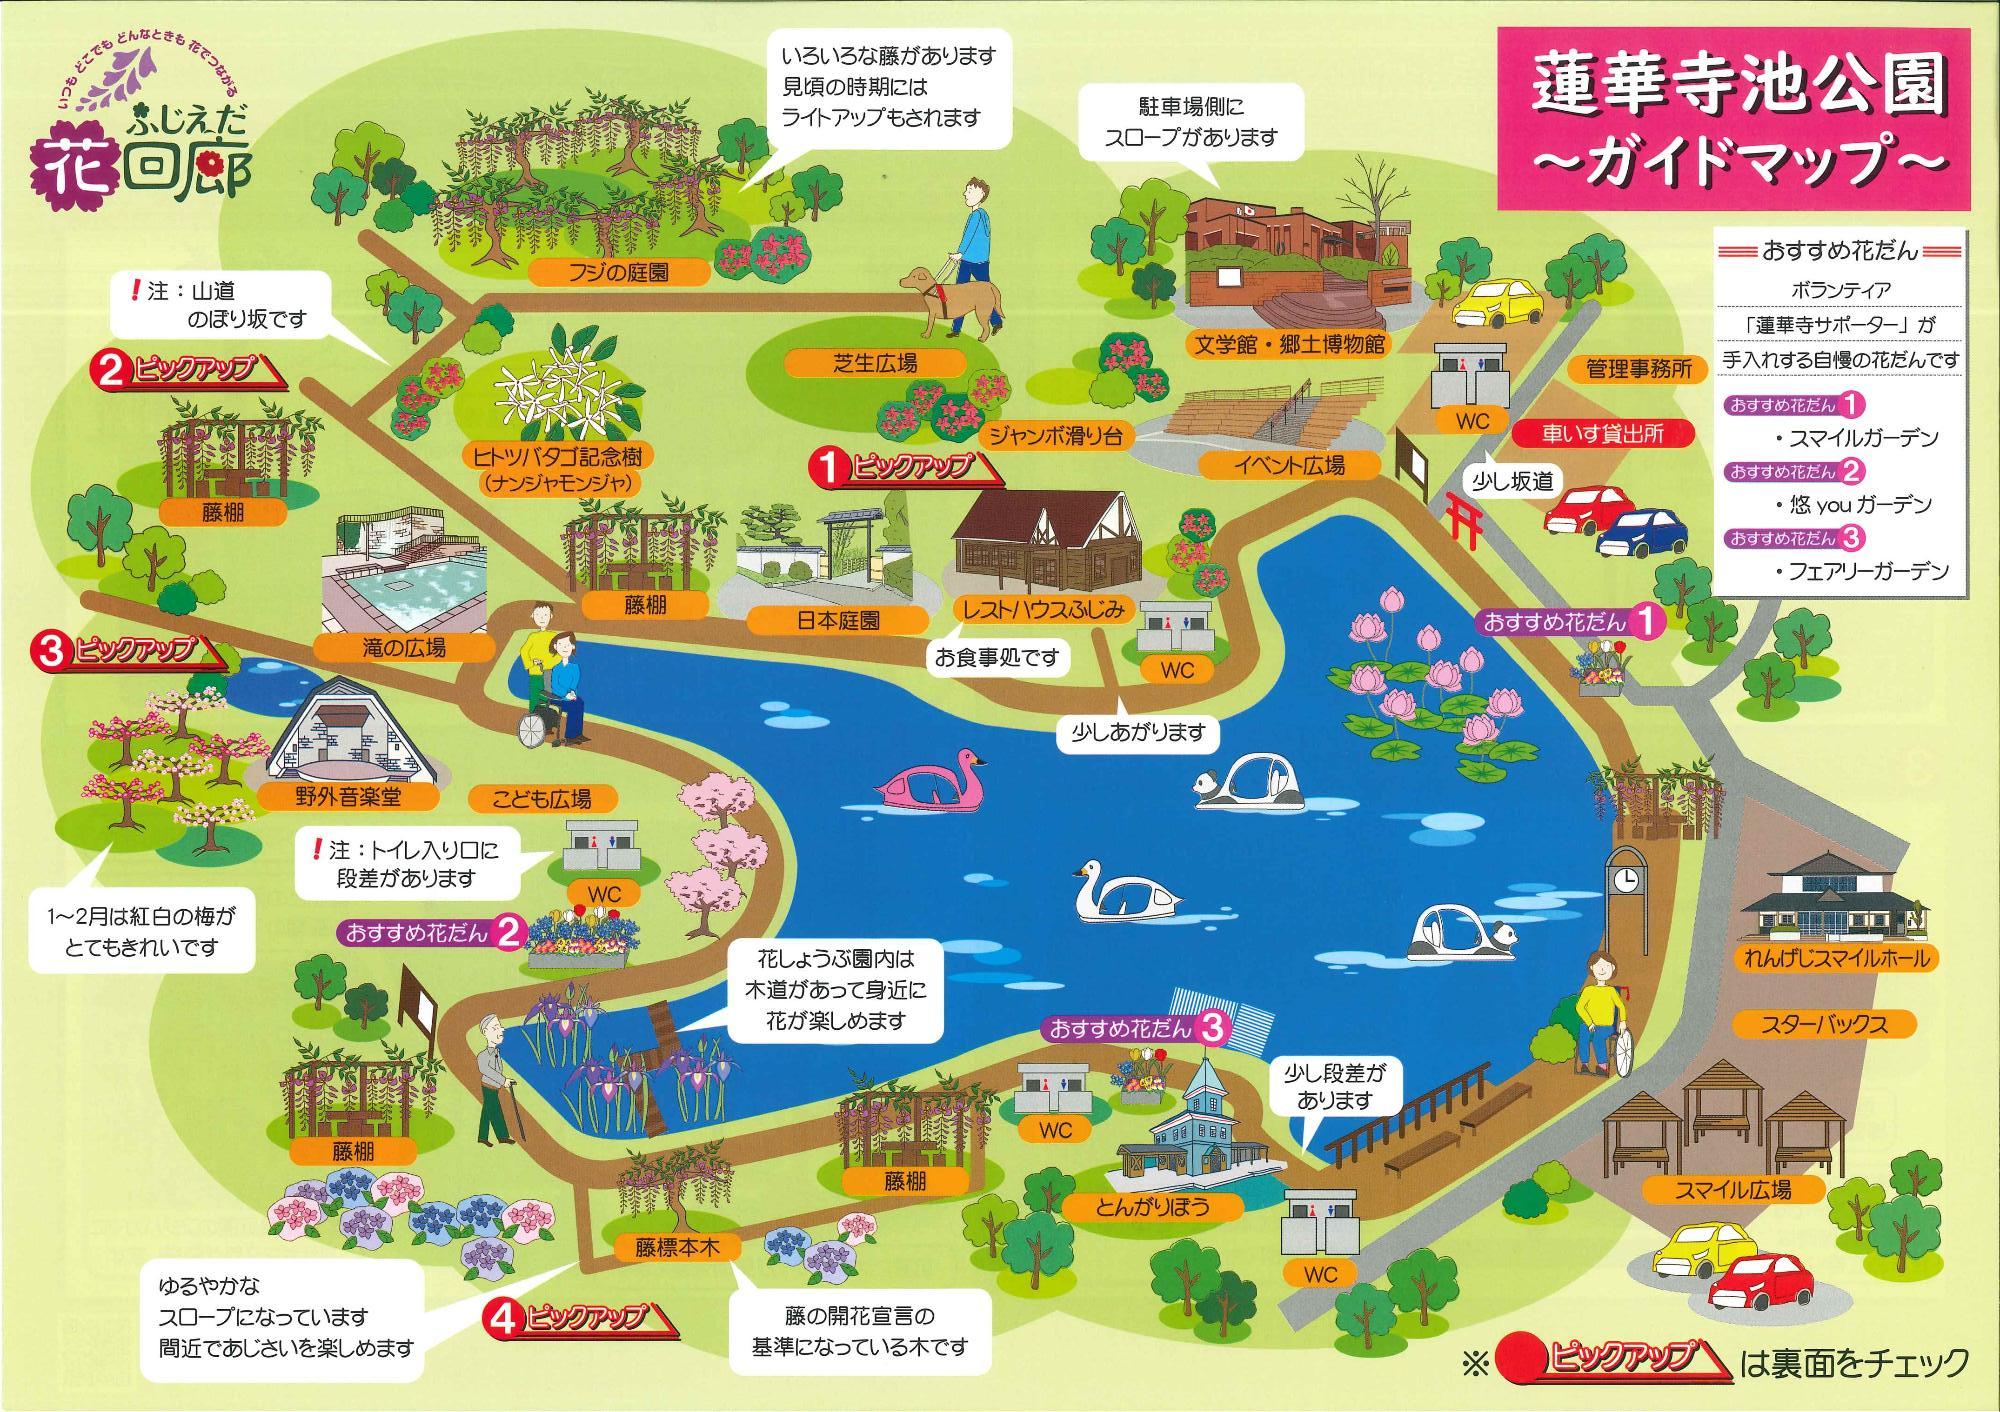 バリアフリー情報掲載の蓮華寺池公園案内マップの表